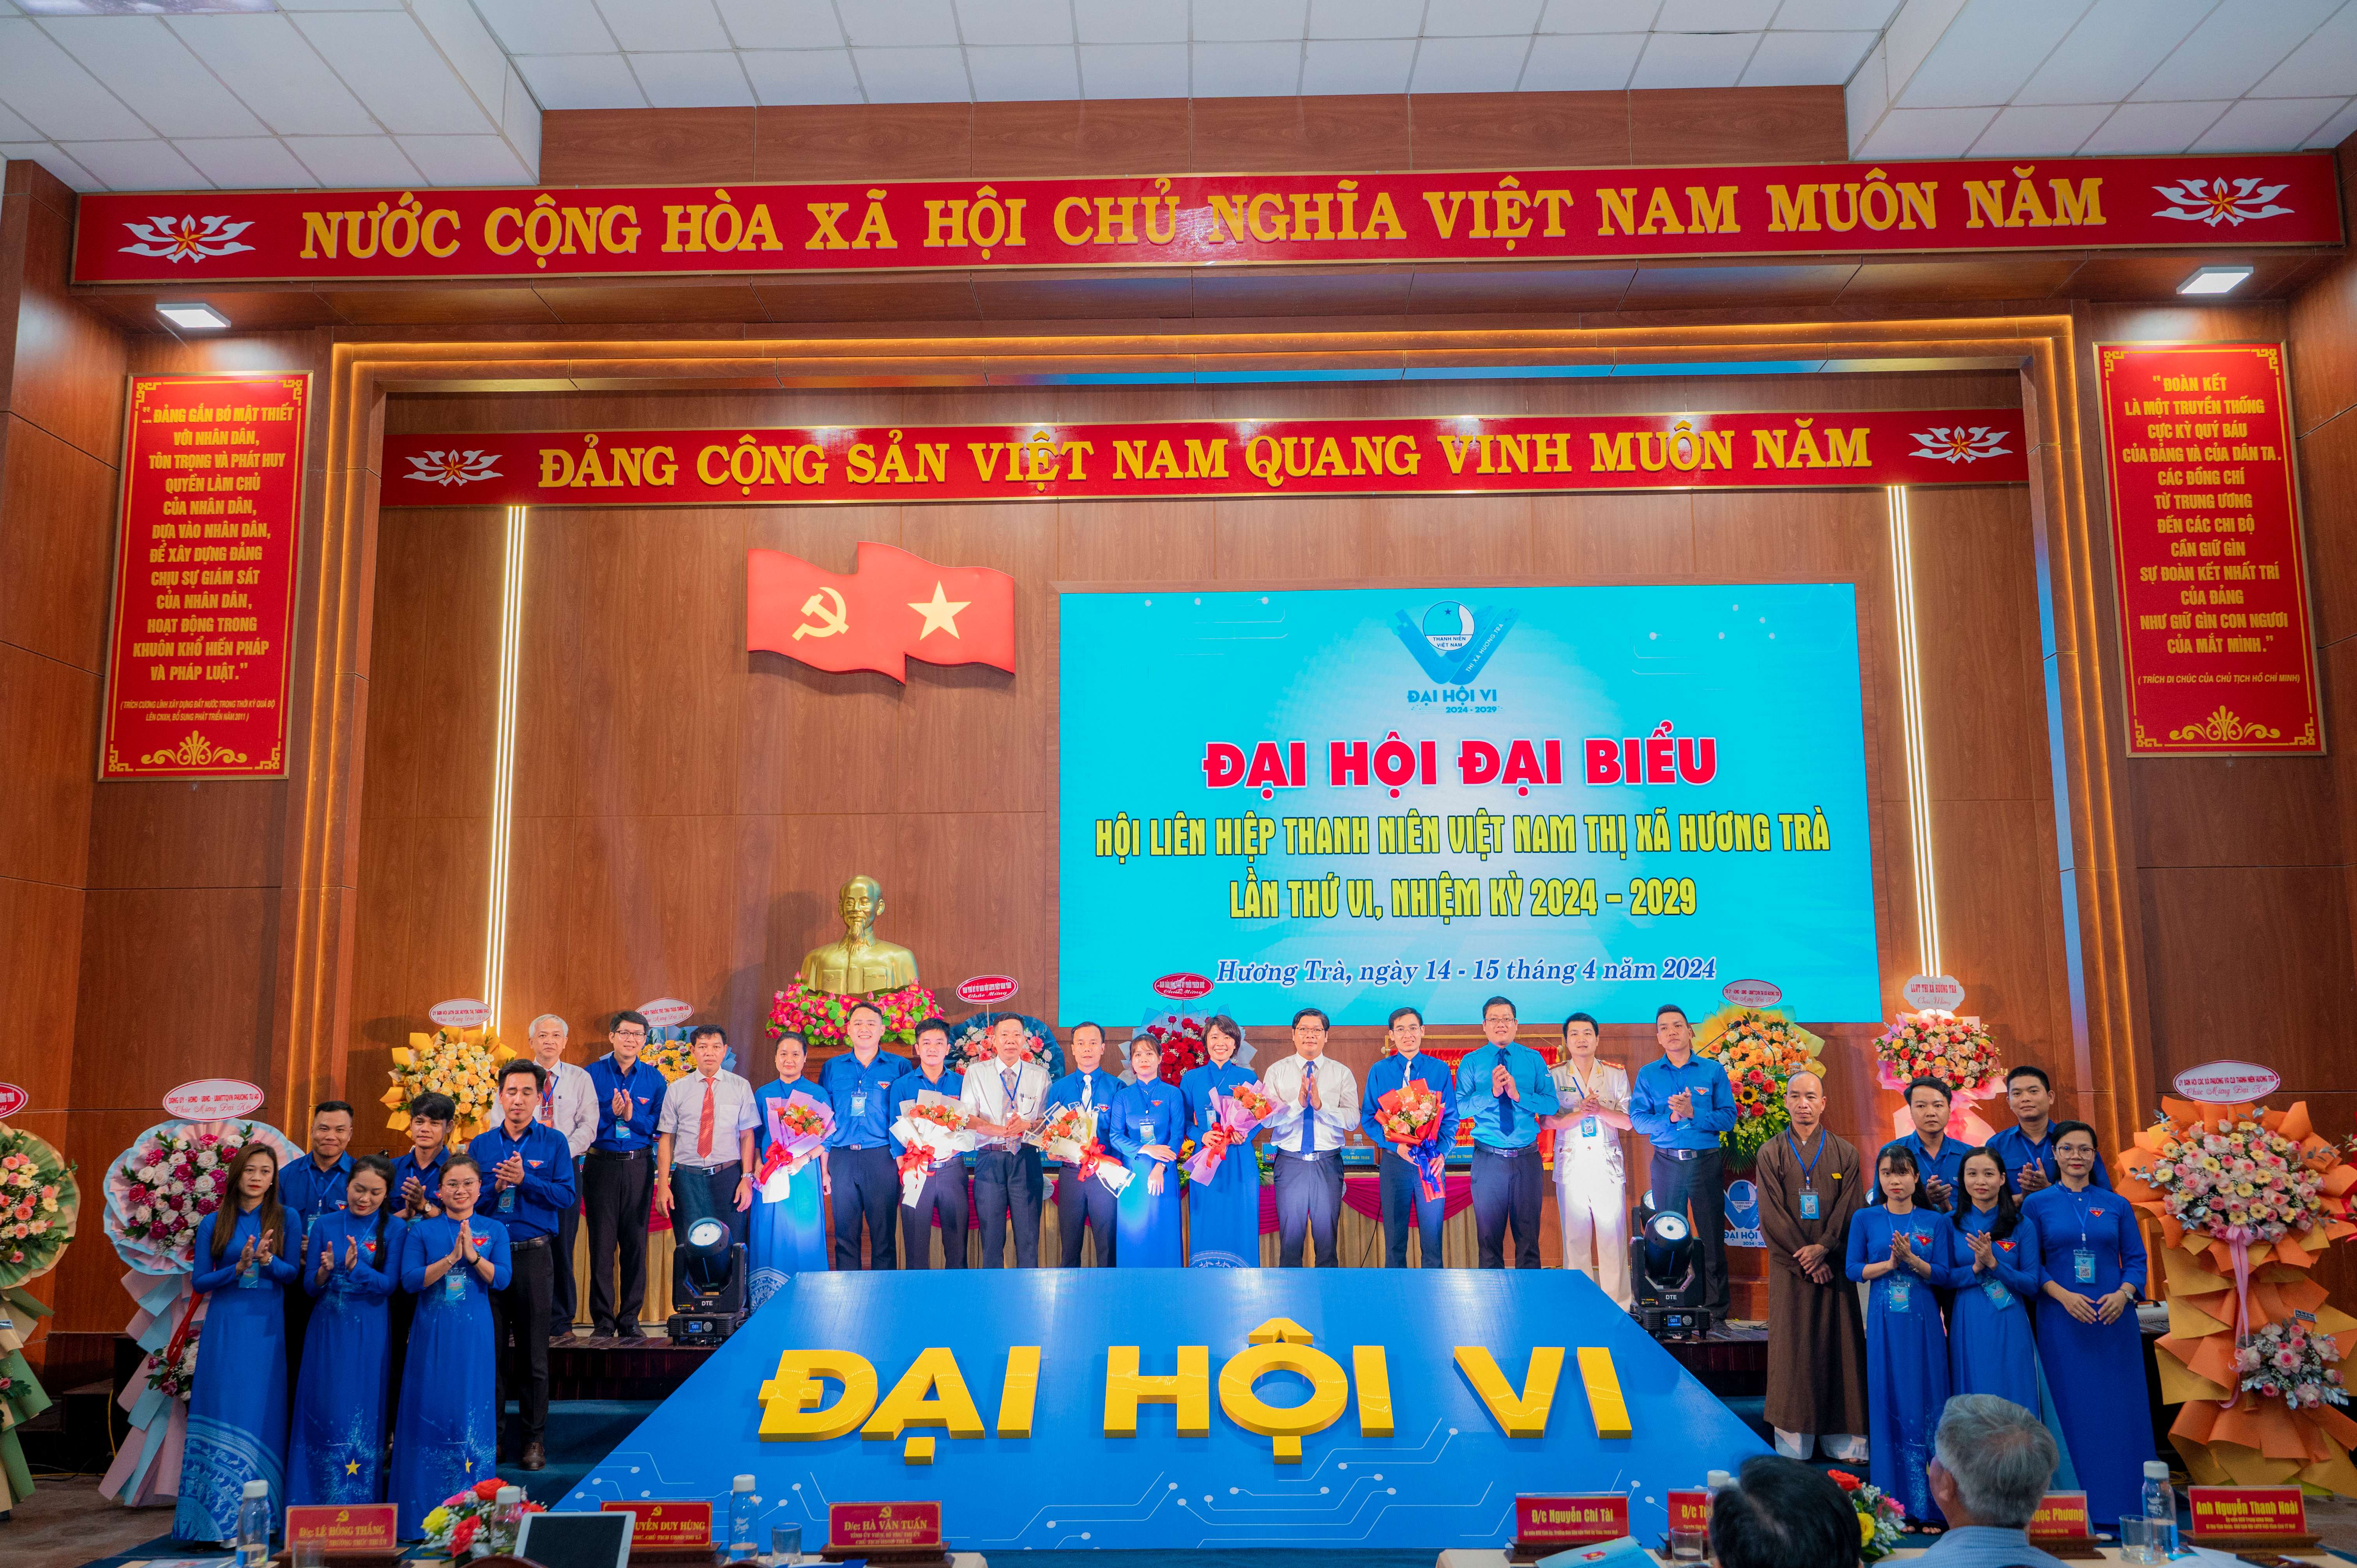 Đại hội đại biểu Hội Liên hiệp Thanh niên Việt Nam thị xã lần thứ VI, nhiệm kỳ 2024 - 2029